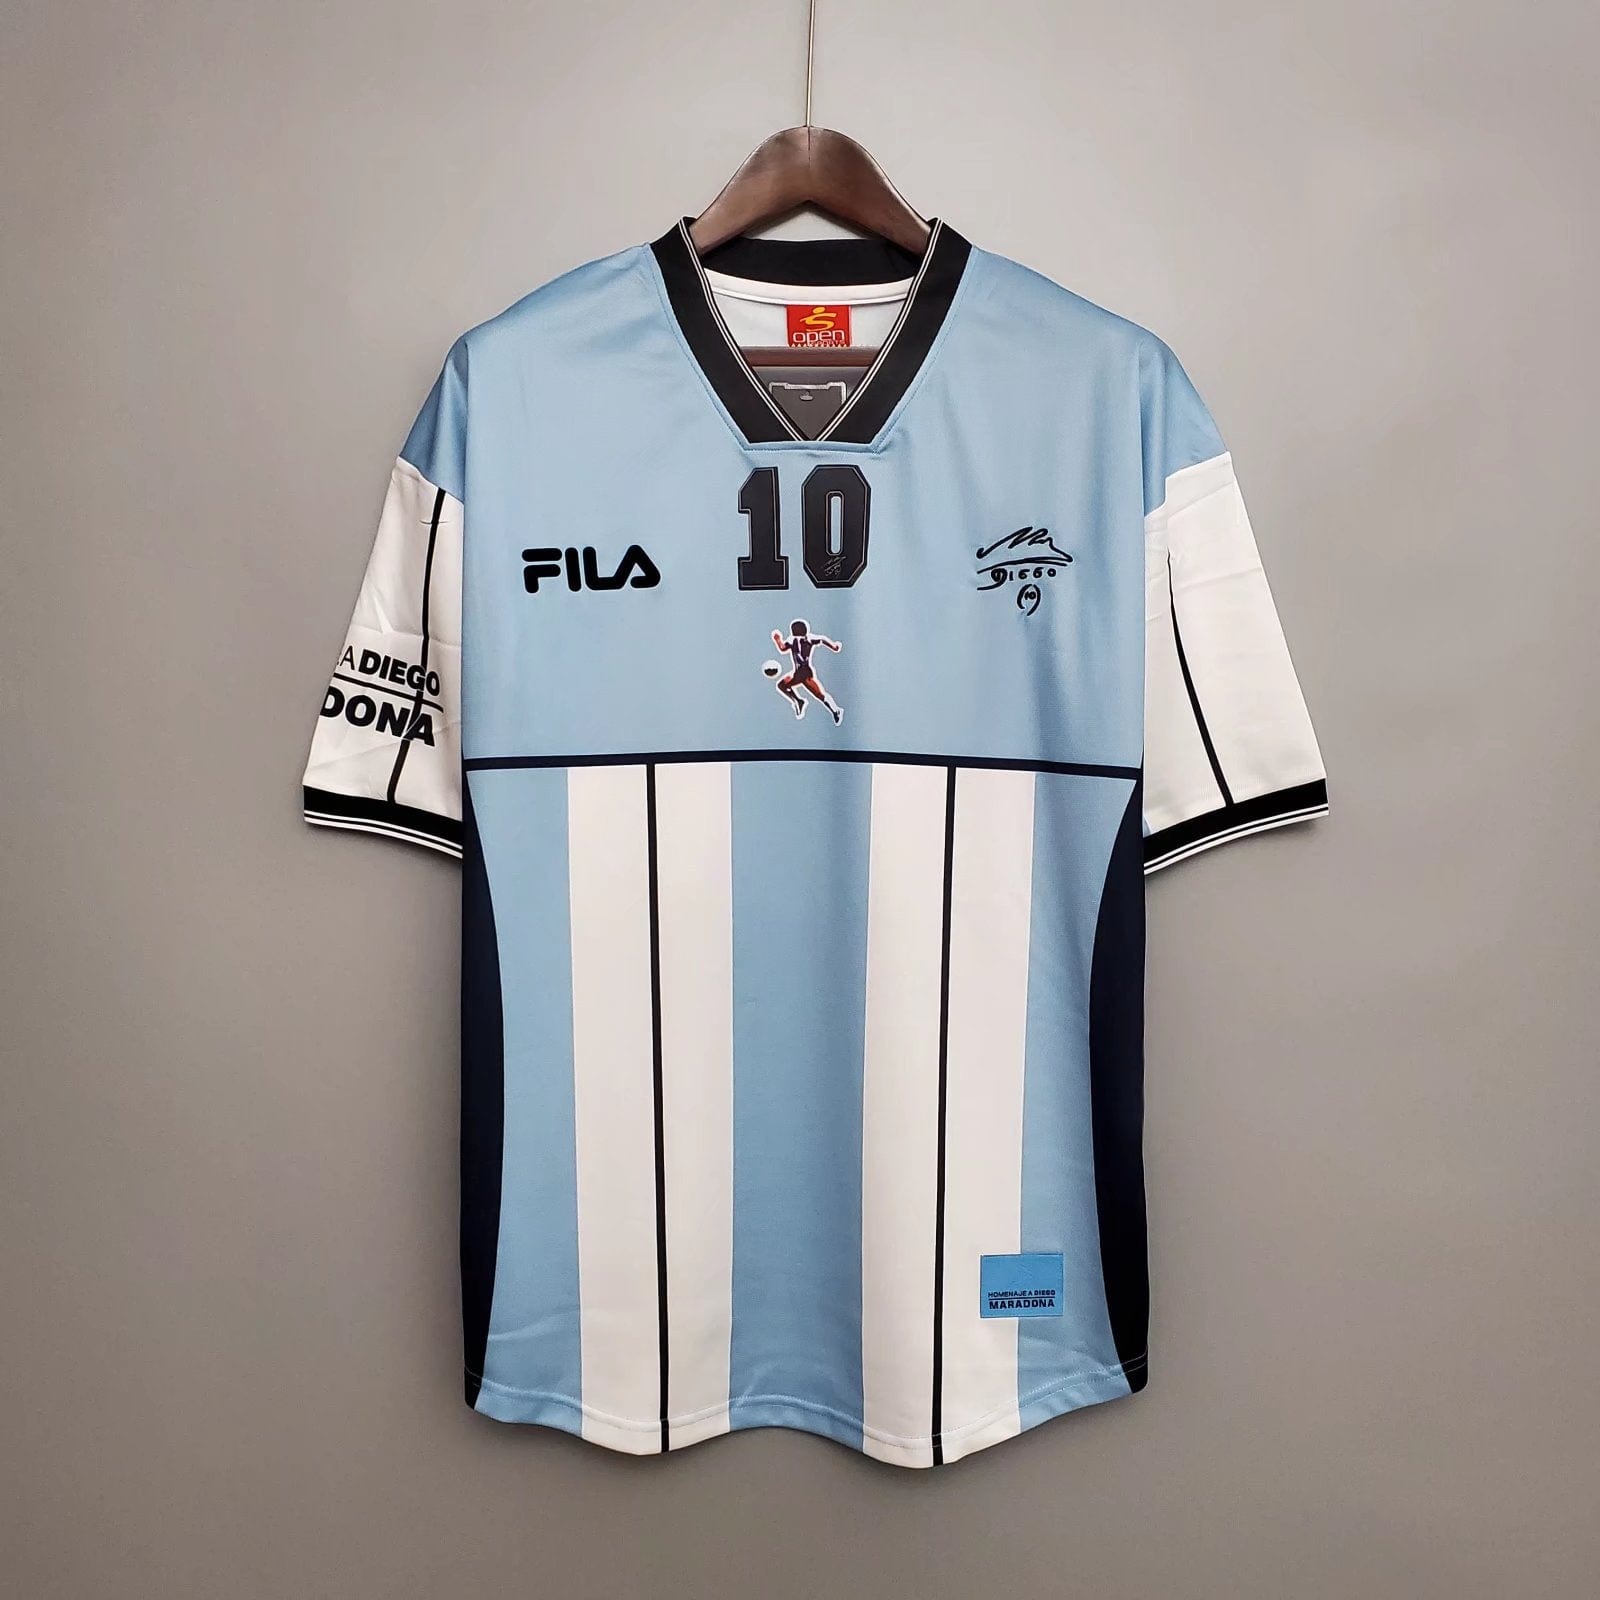 2001 Maradona Argentina Home Jersey - Football Classic